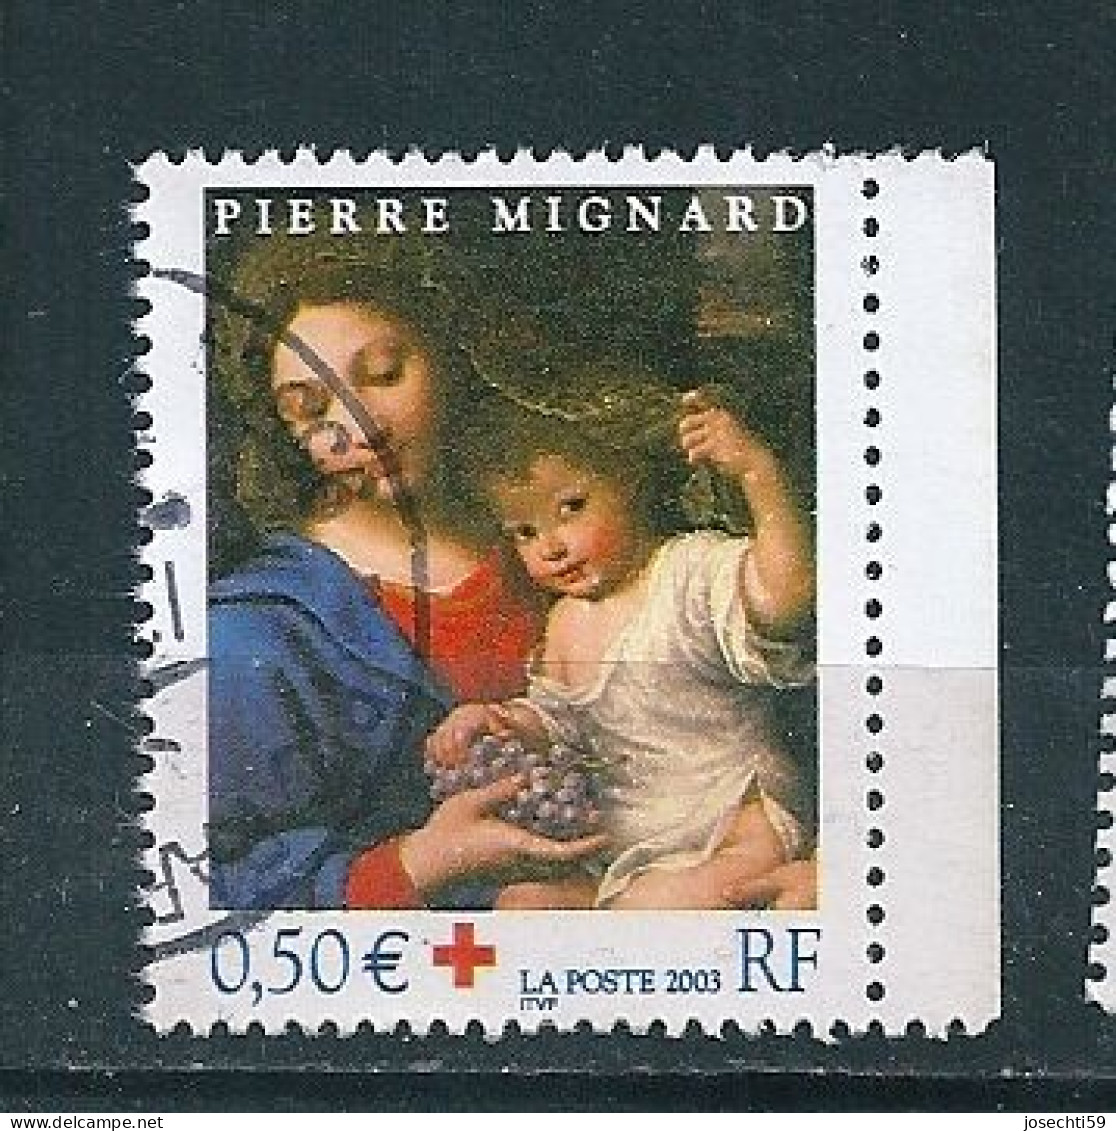 N°  3620 Vierge à La Grappe Timbre France Croix Rouge 2003 Oblitéré - Gebraucht